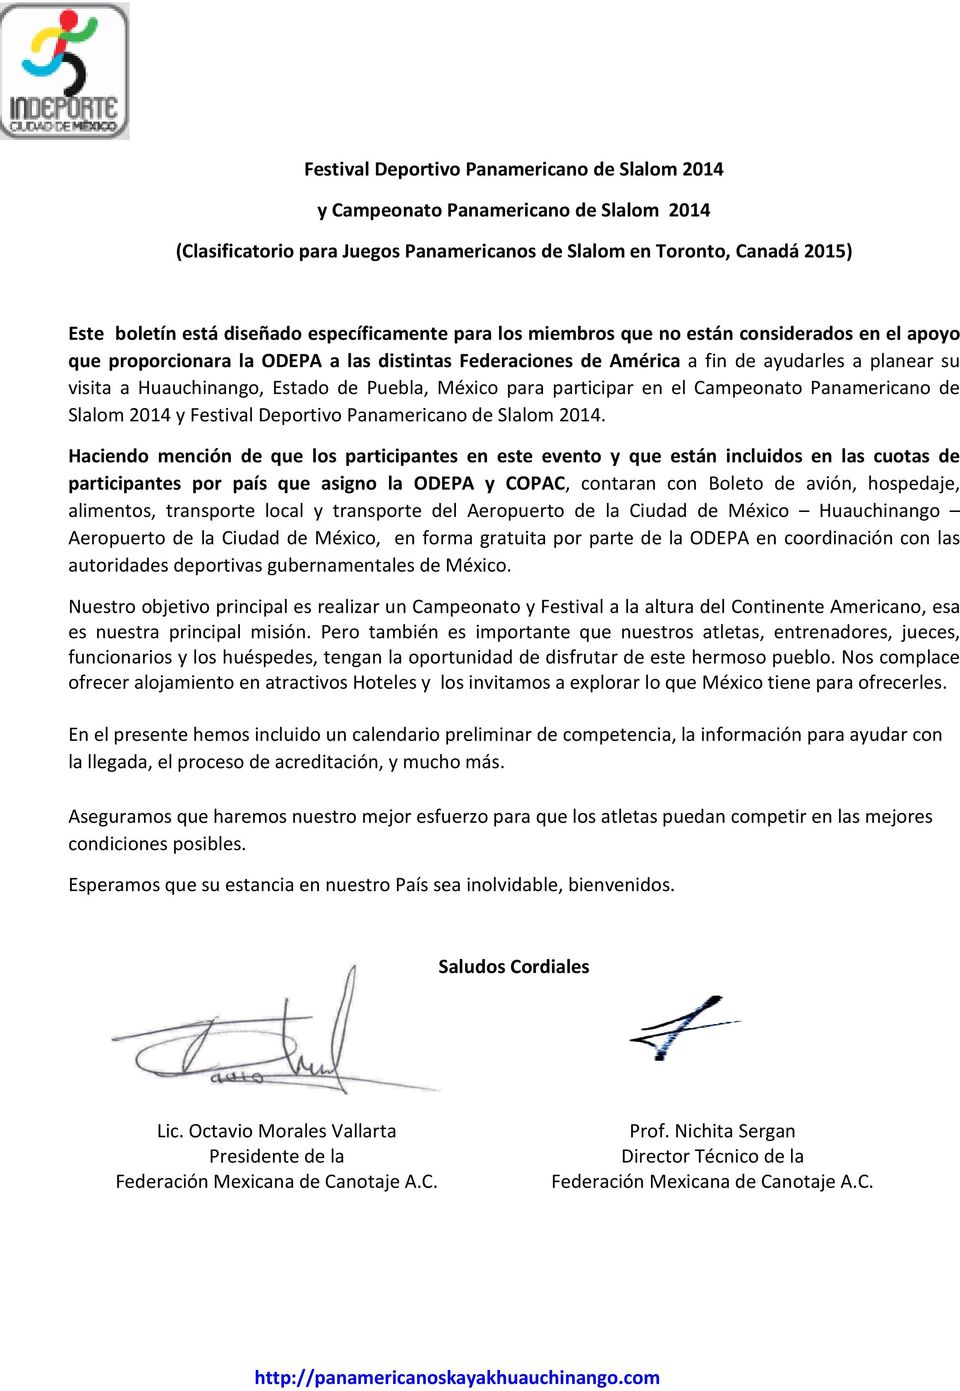 Estado de Puebla, México para participar en el Campeonato Panamericano de Slalom 2014 y Festival Deportivo Panamericano de Slalom 2014.